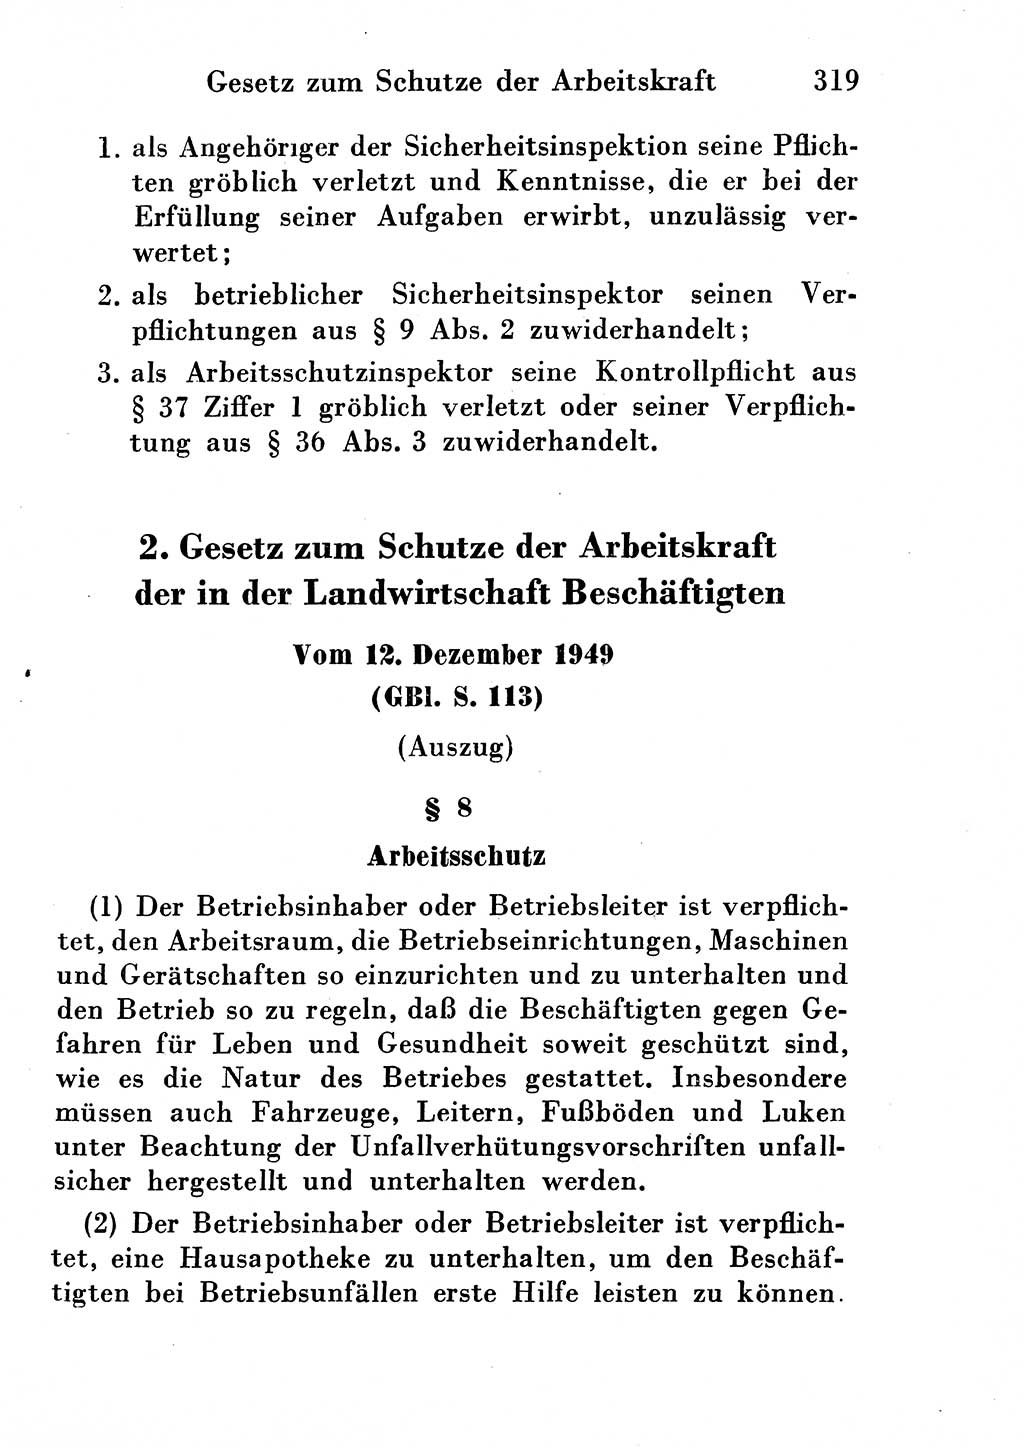 Strafgesetzbuch (StGB) und andere Strafgesetze [Deutsche Demokratische Republik (DDR)] 1954, Seite 319 (StGB Strafges. DDR 1954, S. 319)